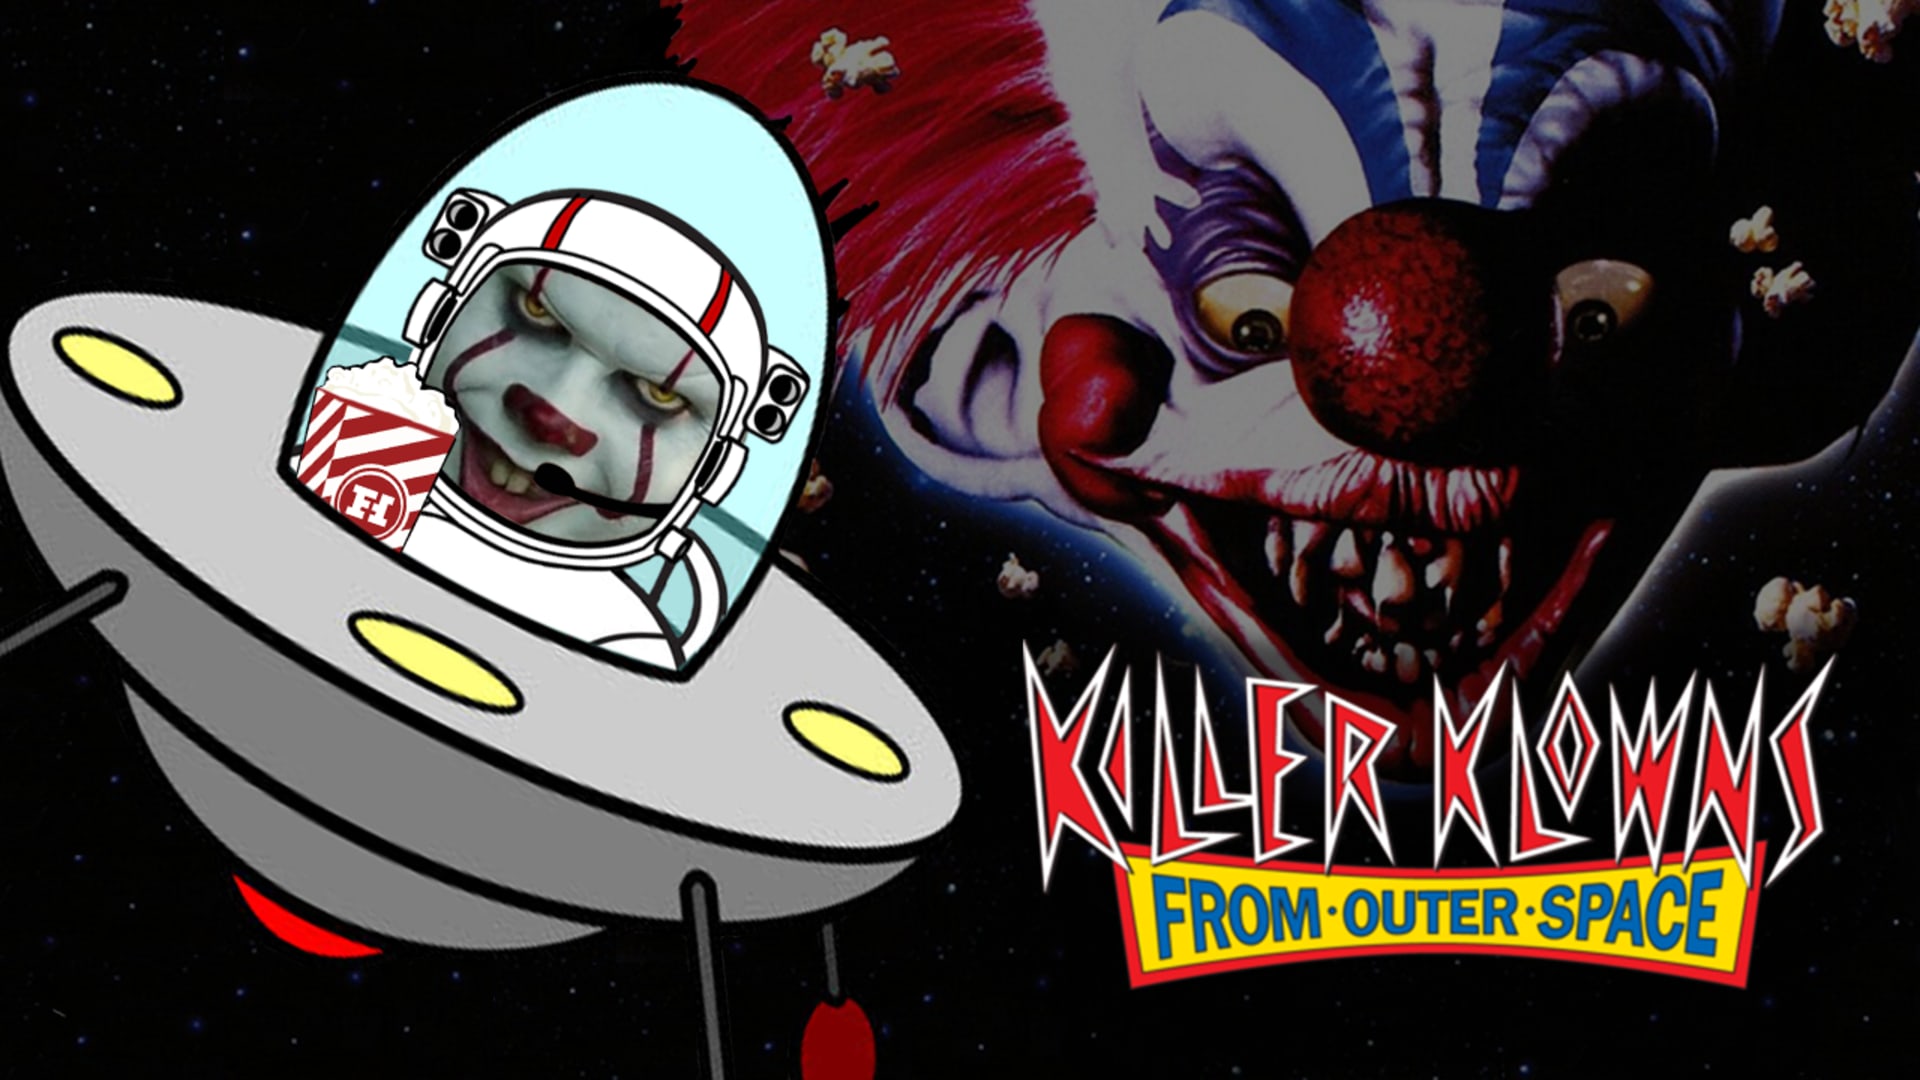 Killer klowns from outer. Killer Klowns from Outer Space. Killer Klowns from Outer Space персонажи.